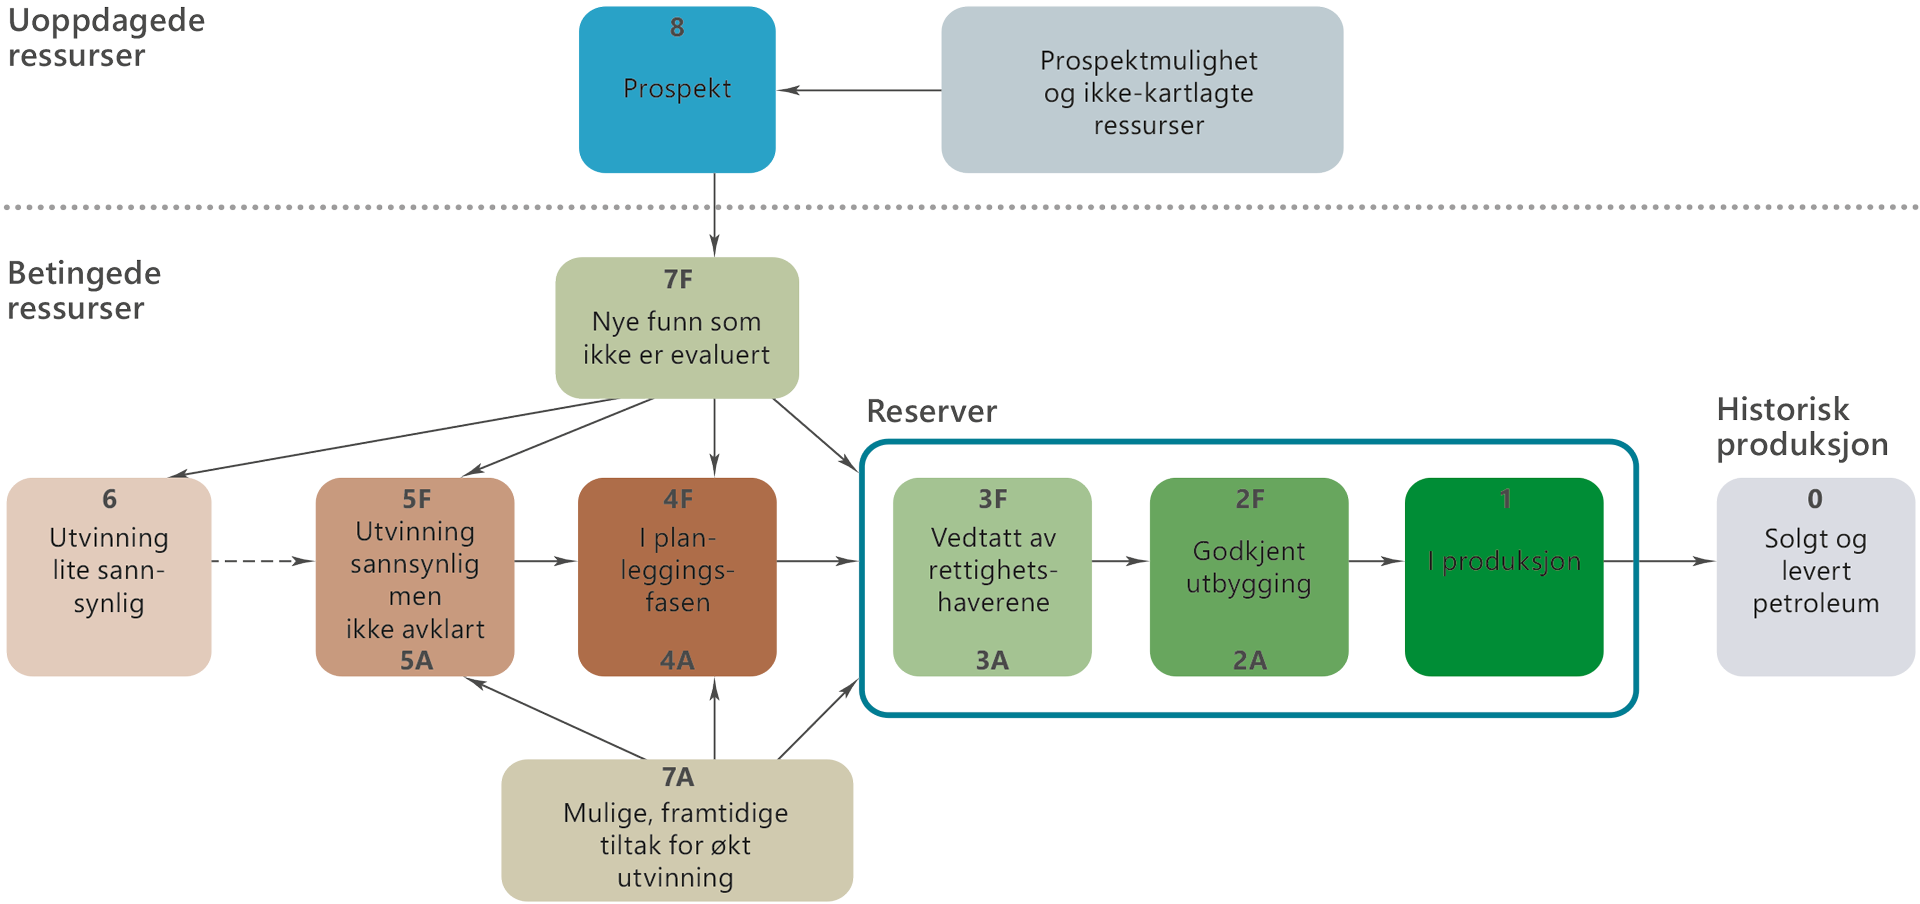 Et diagram som illustrerer klassifiseringssystemet som benyttes i OD for uoppdagede ressurser, betingede ressurser, reserver, og historisk produksjon.